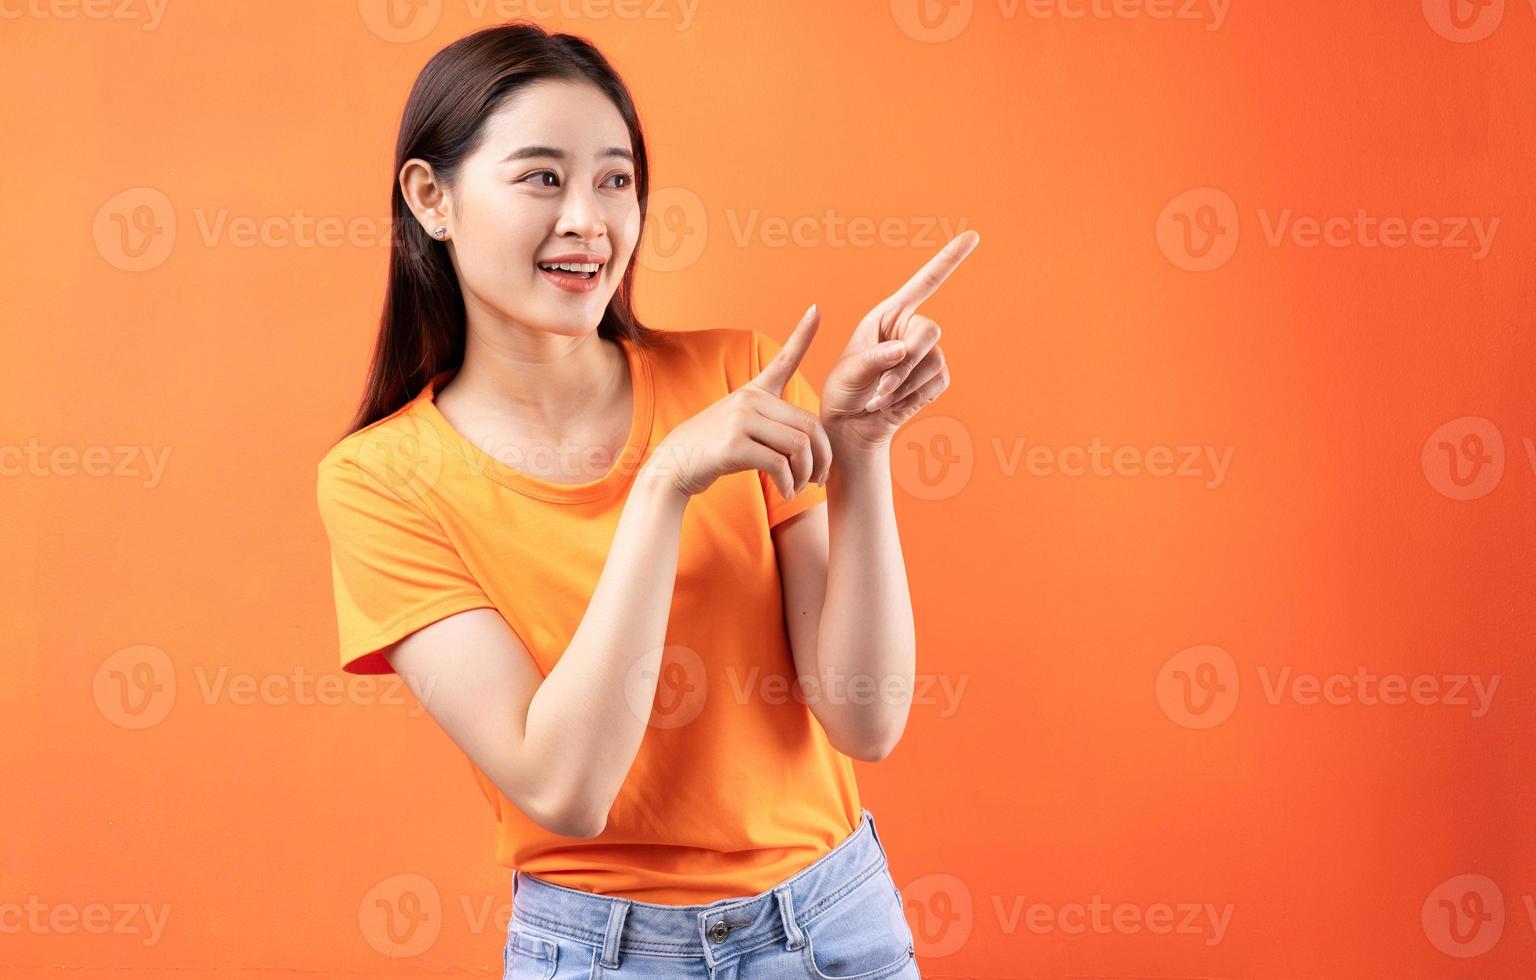 afbeelding van een jonge Aziatische vrouw die een oranje t-shirt draagt op een oranje achtergrond orange foto